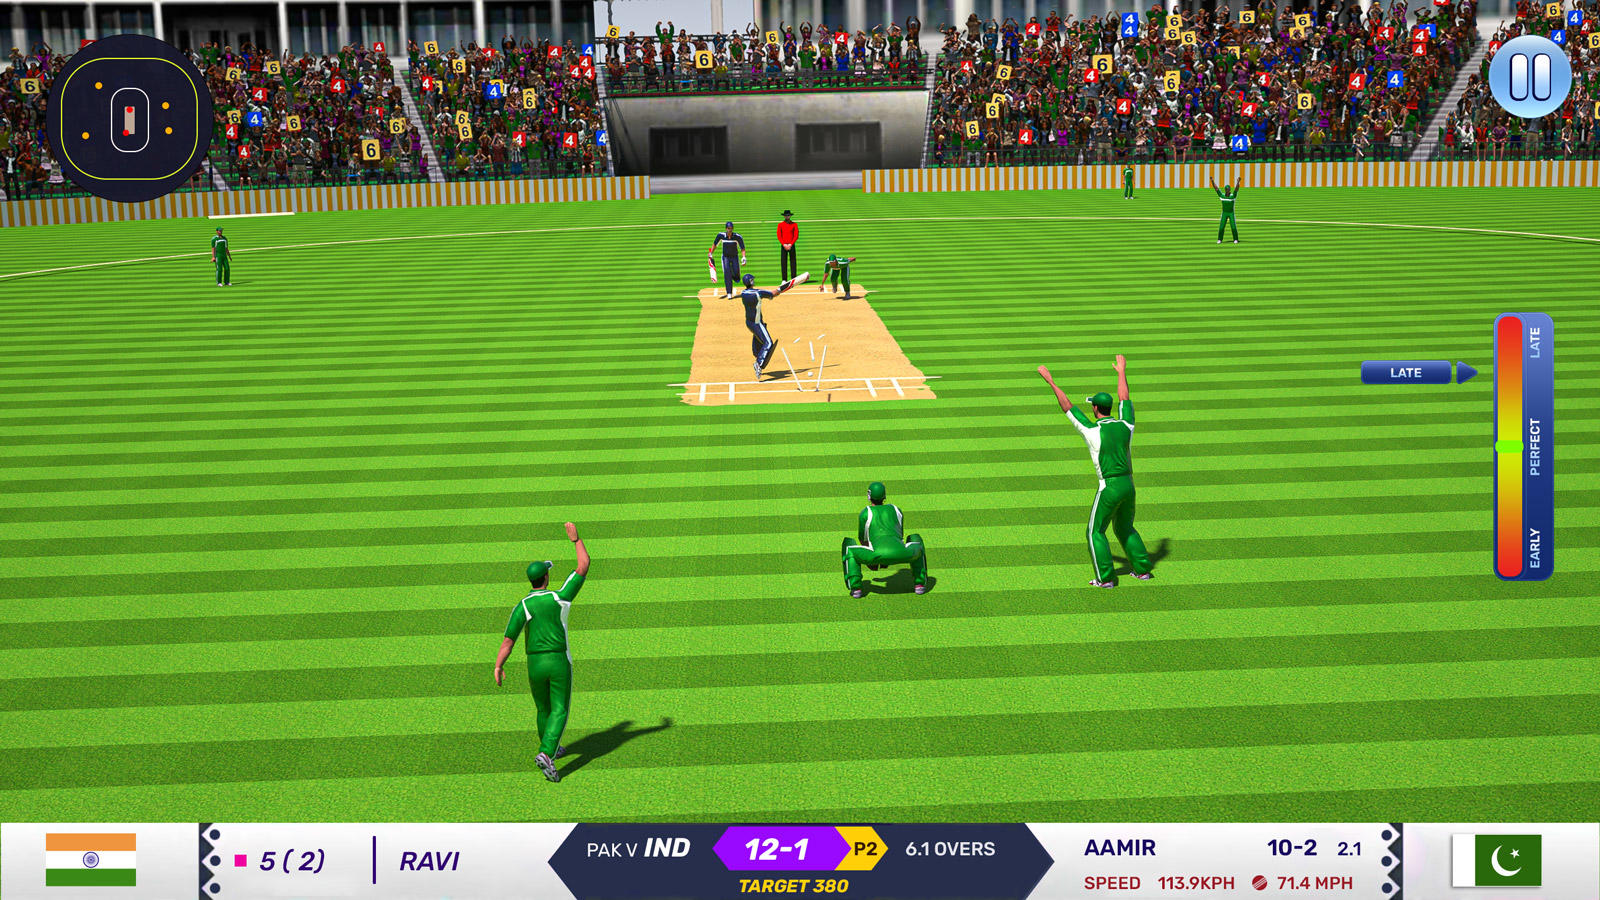 Cronograma de jogos finais de críquete t20 com bola vermelha realista  atingindo toco de wicket no fundo azul do estádio